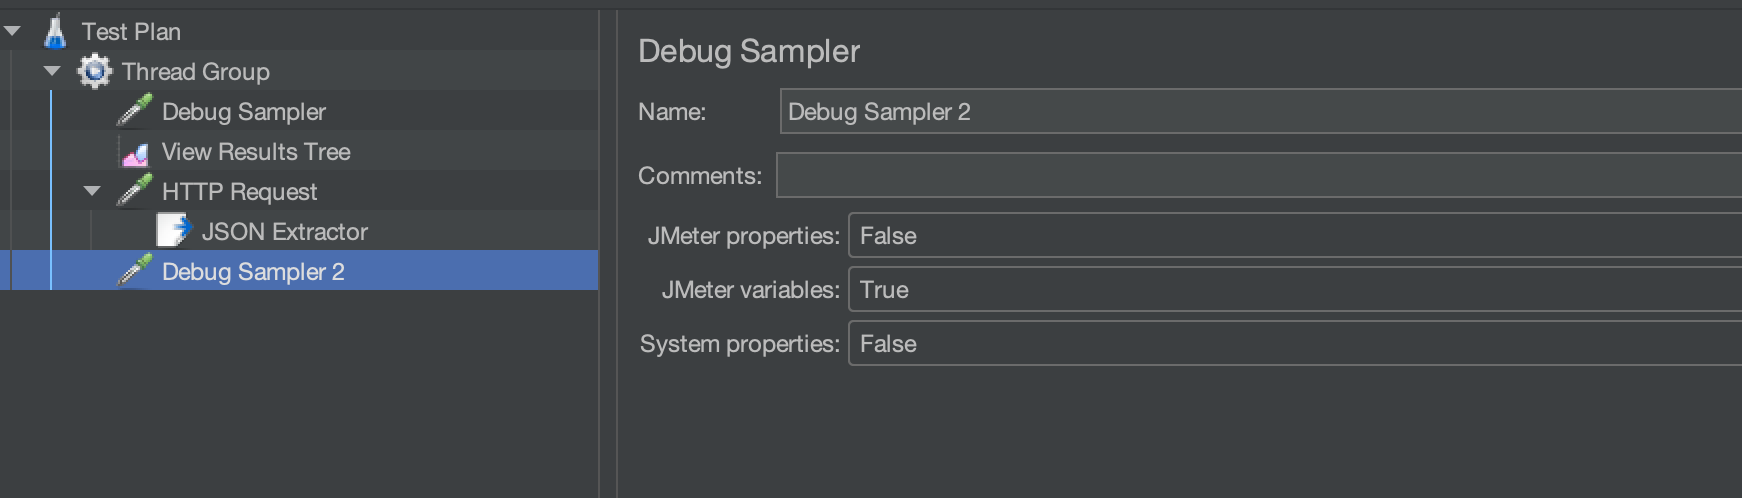 Second debug sampler